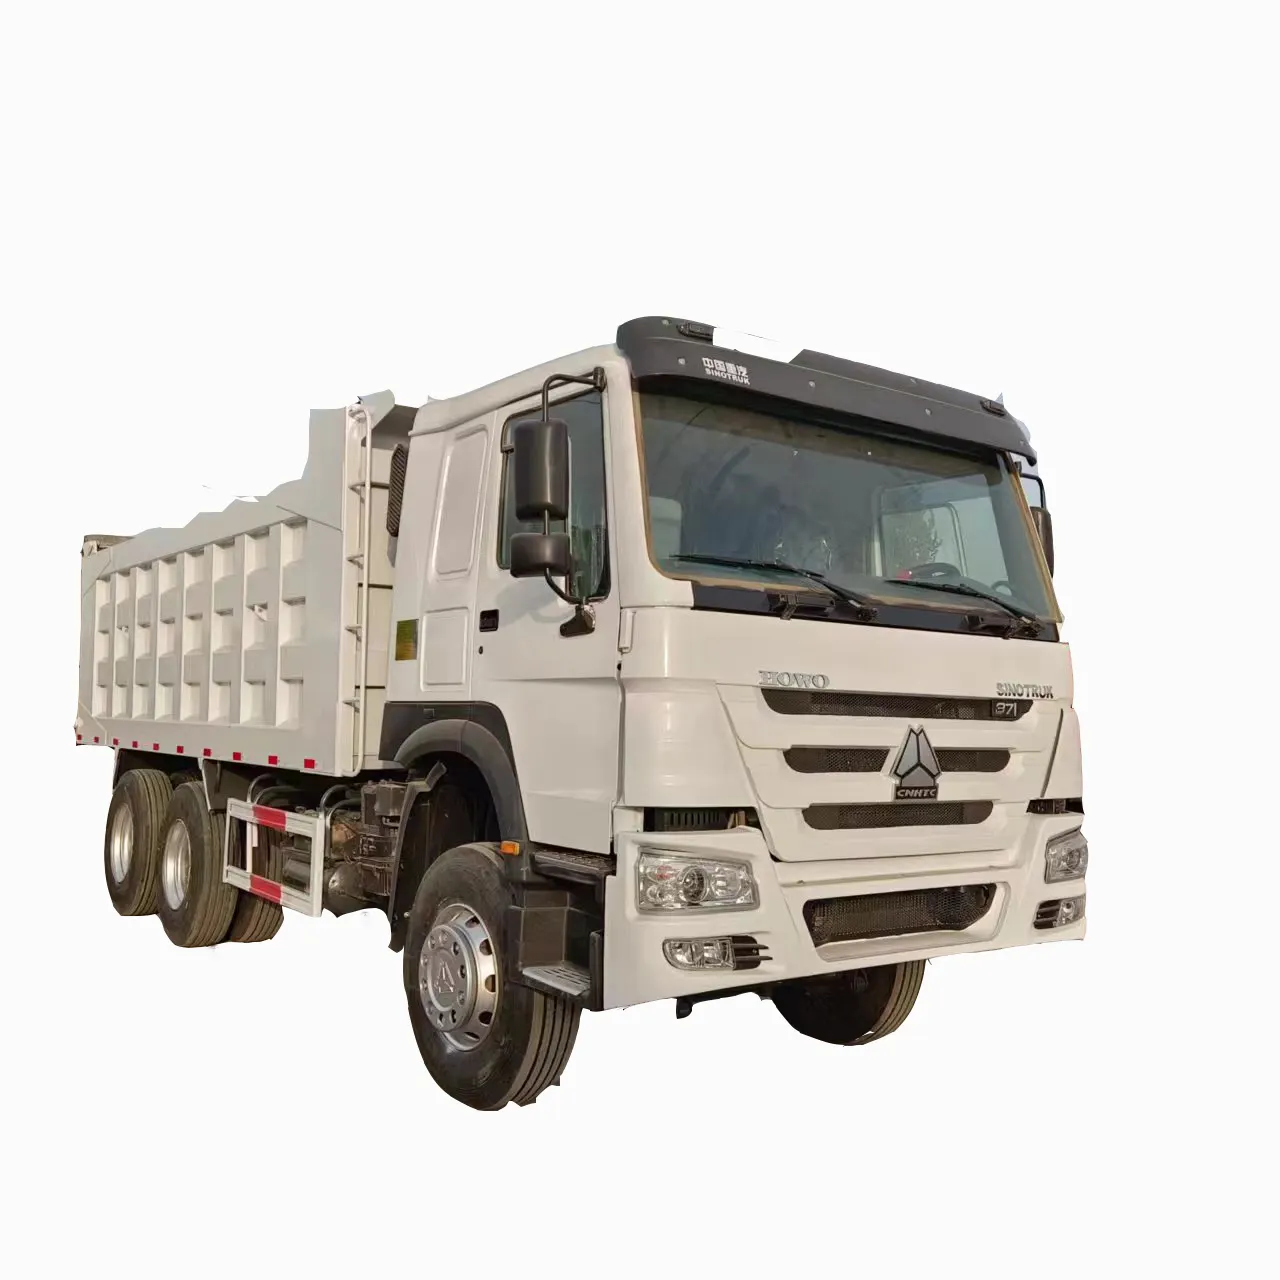 सिनोट्रक होवो ट्रक 2021 6x4 ट्रैक्टर ट्रक, 10 पहिया वाहन का इस्तेमाल ट्रैक्टर